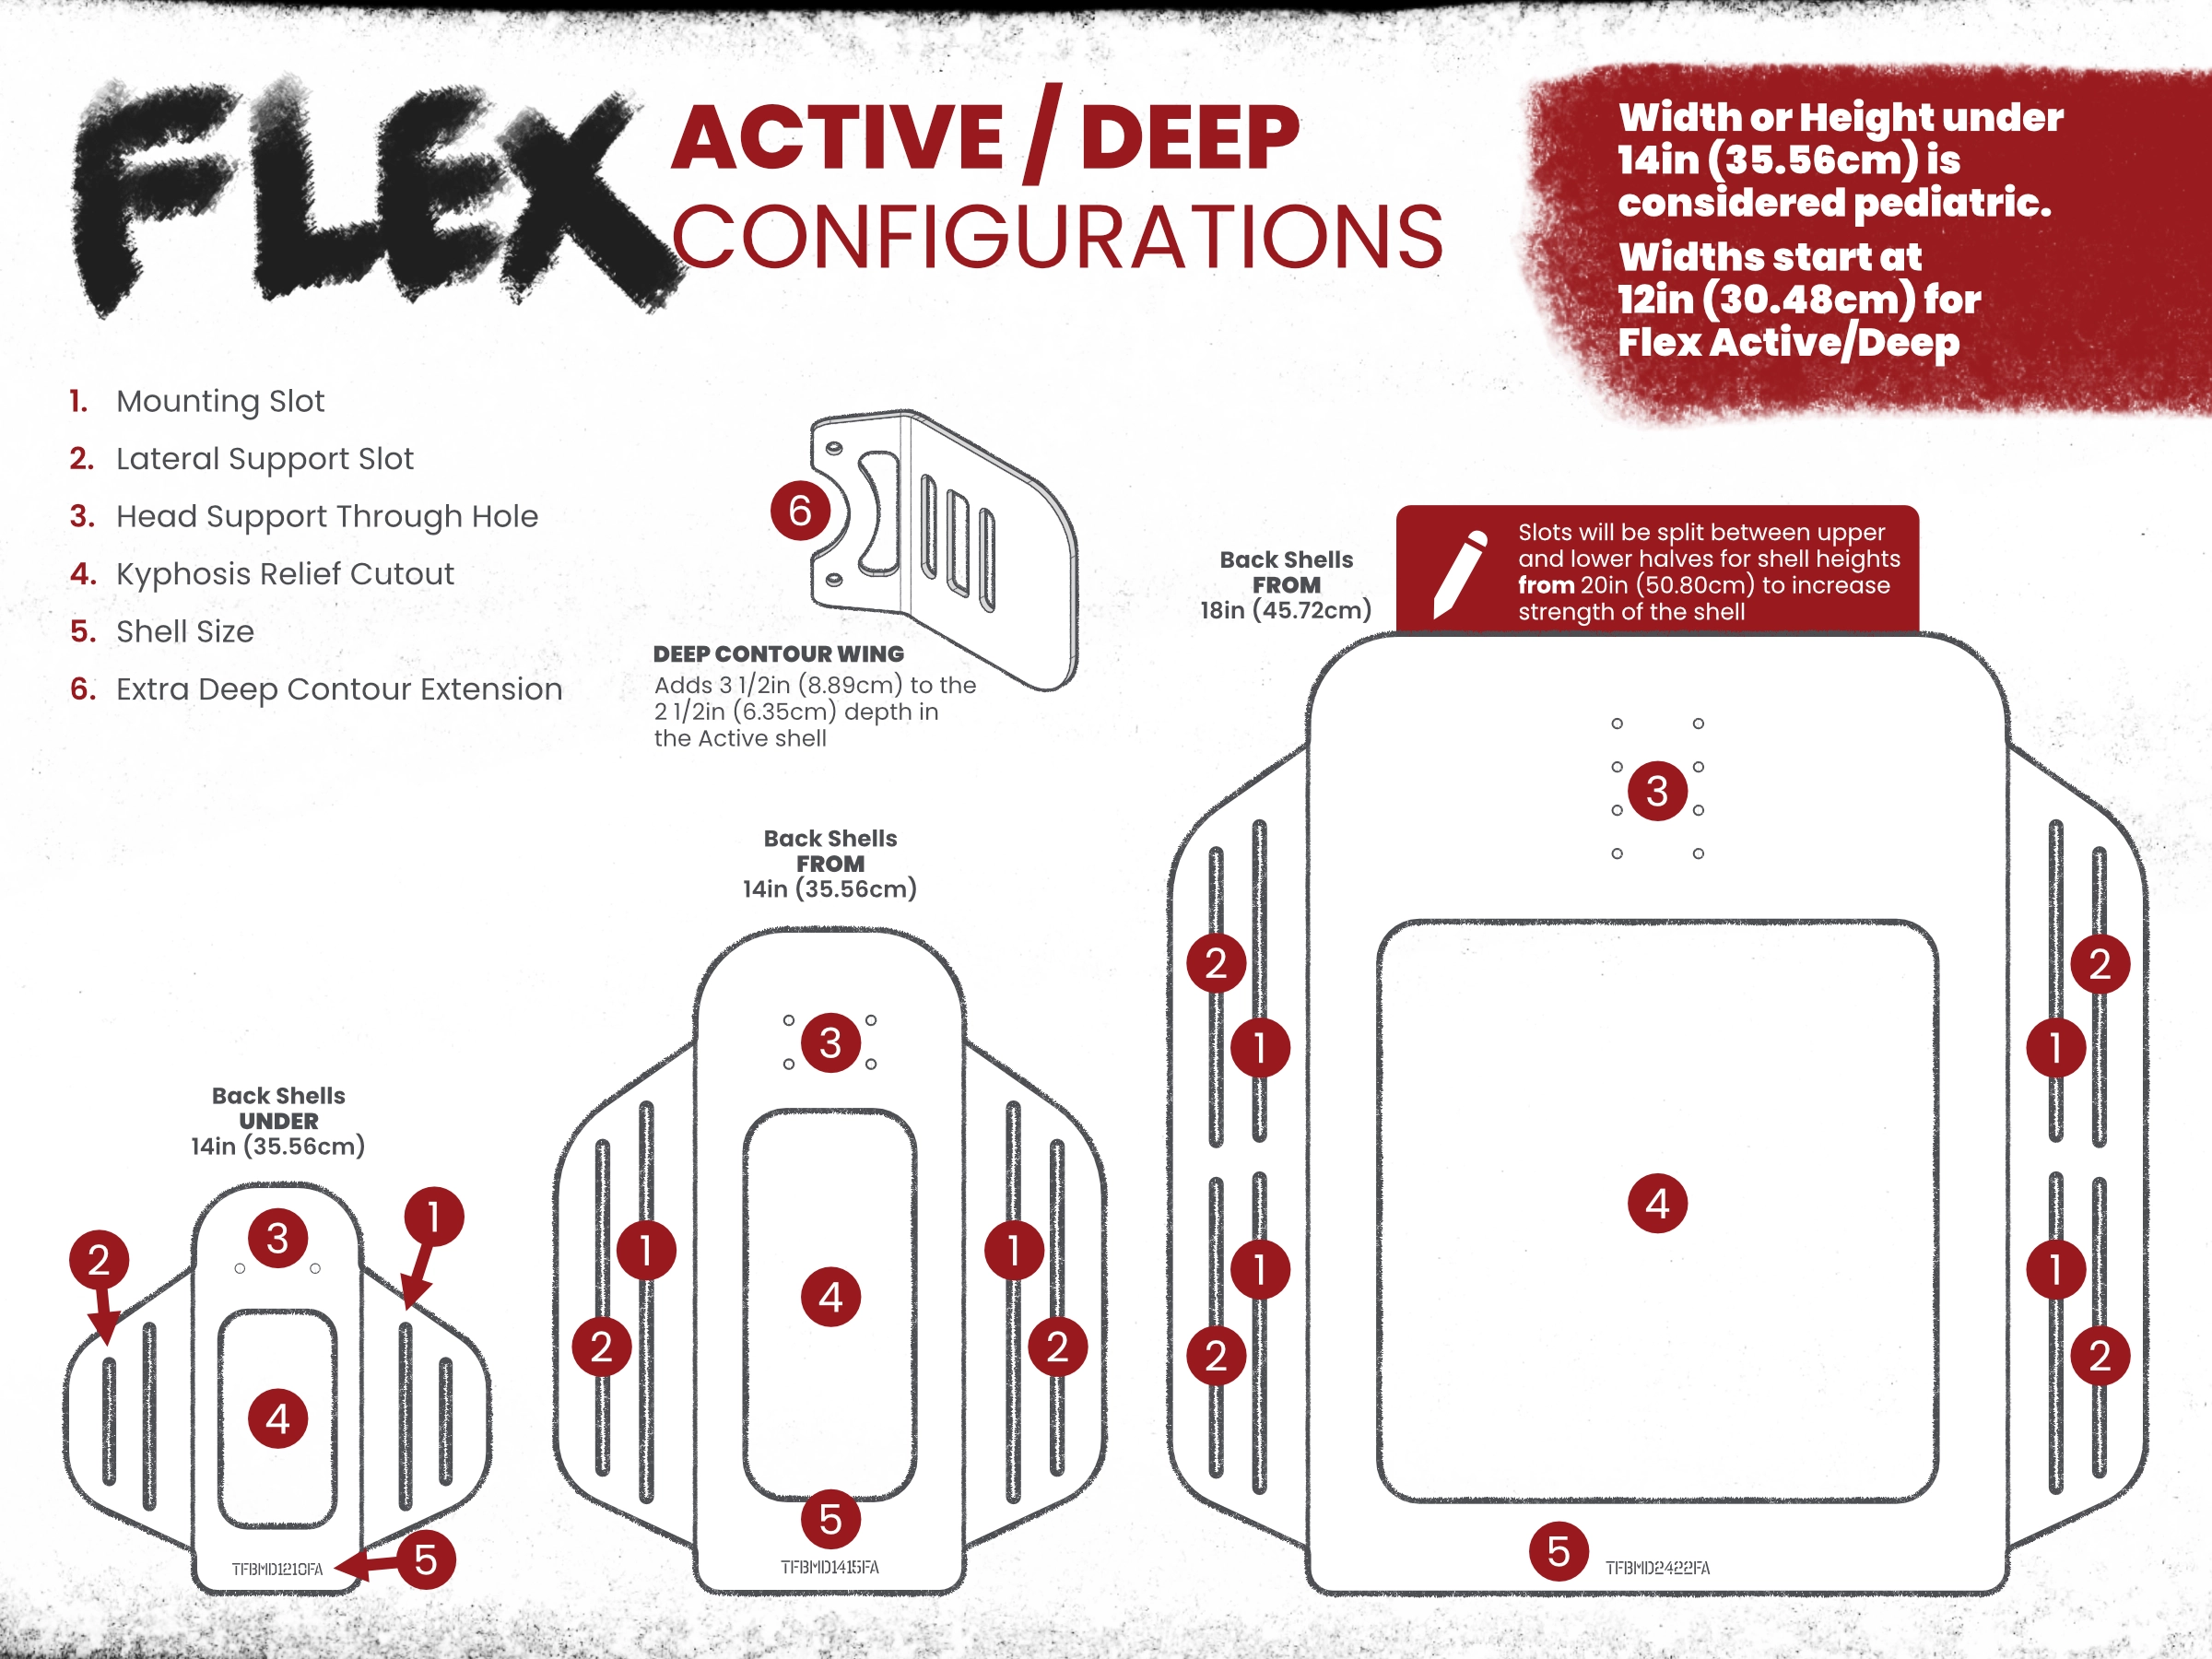 Flex Active/Deep shell configurations